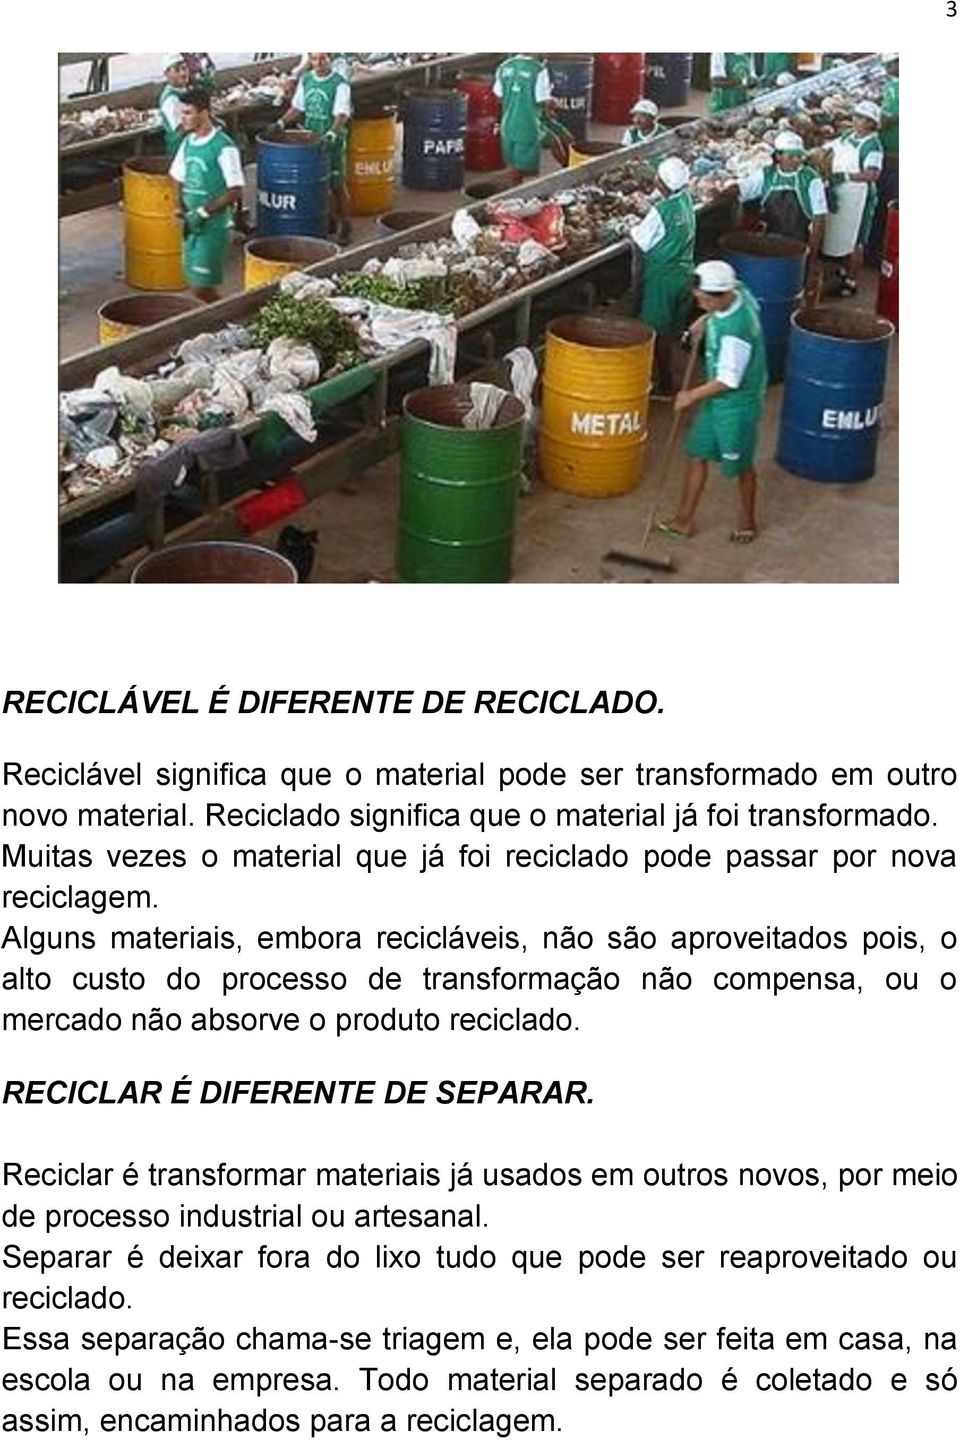 Alguns materiais, embora recicláveis, não são aproveitados pois, o alto custo do processo de transformação não compensa, ou o mercado não absorve o produto reciclado. RECICLAR É DIFERENTE DE SEPARAR.